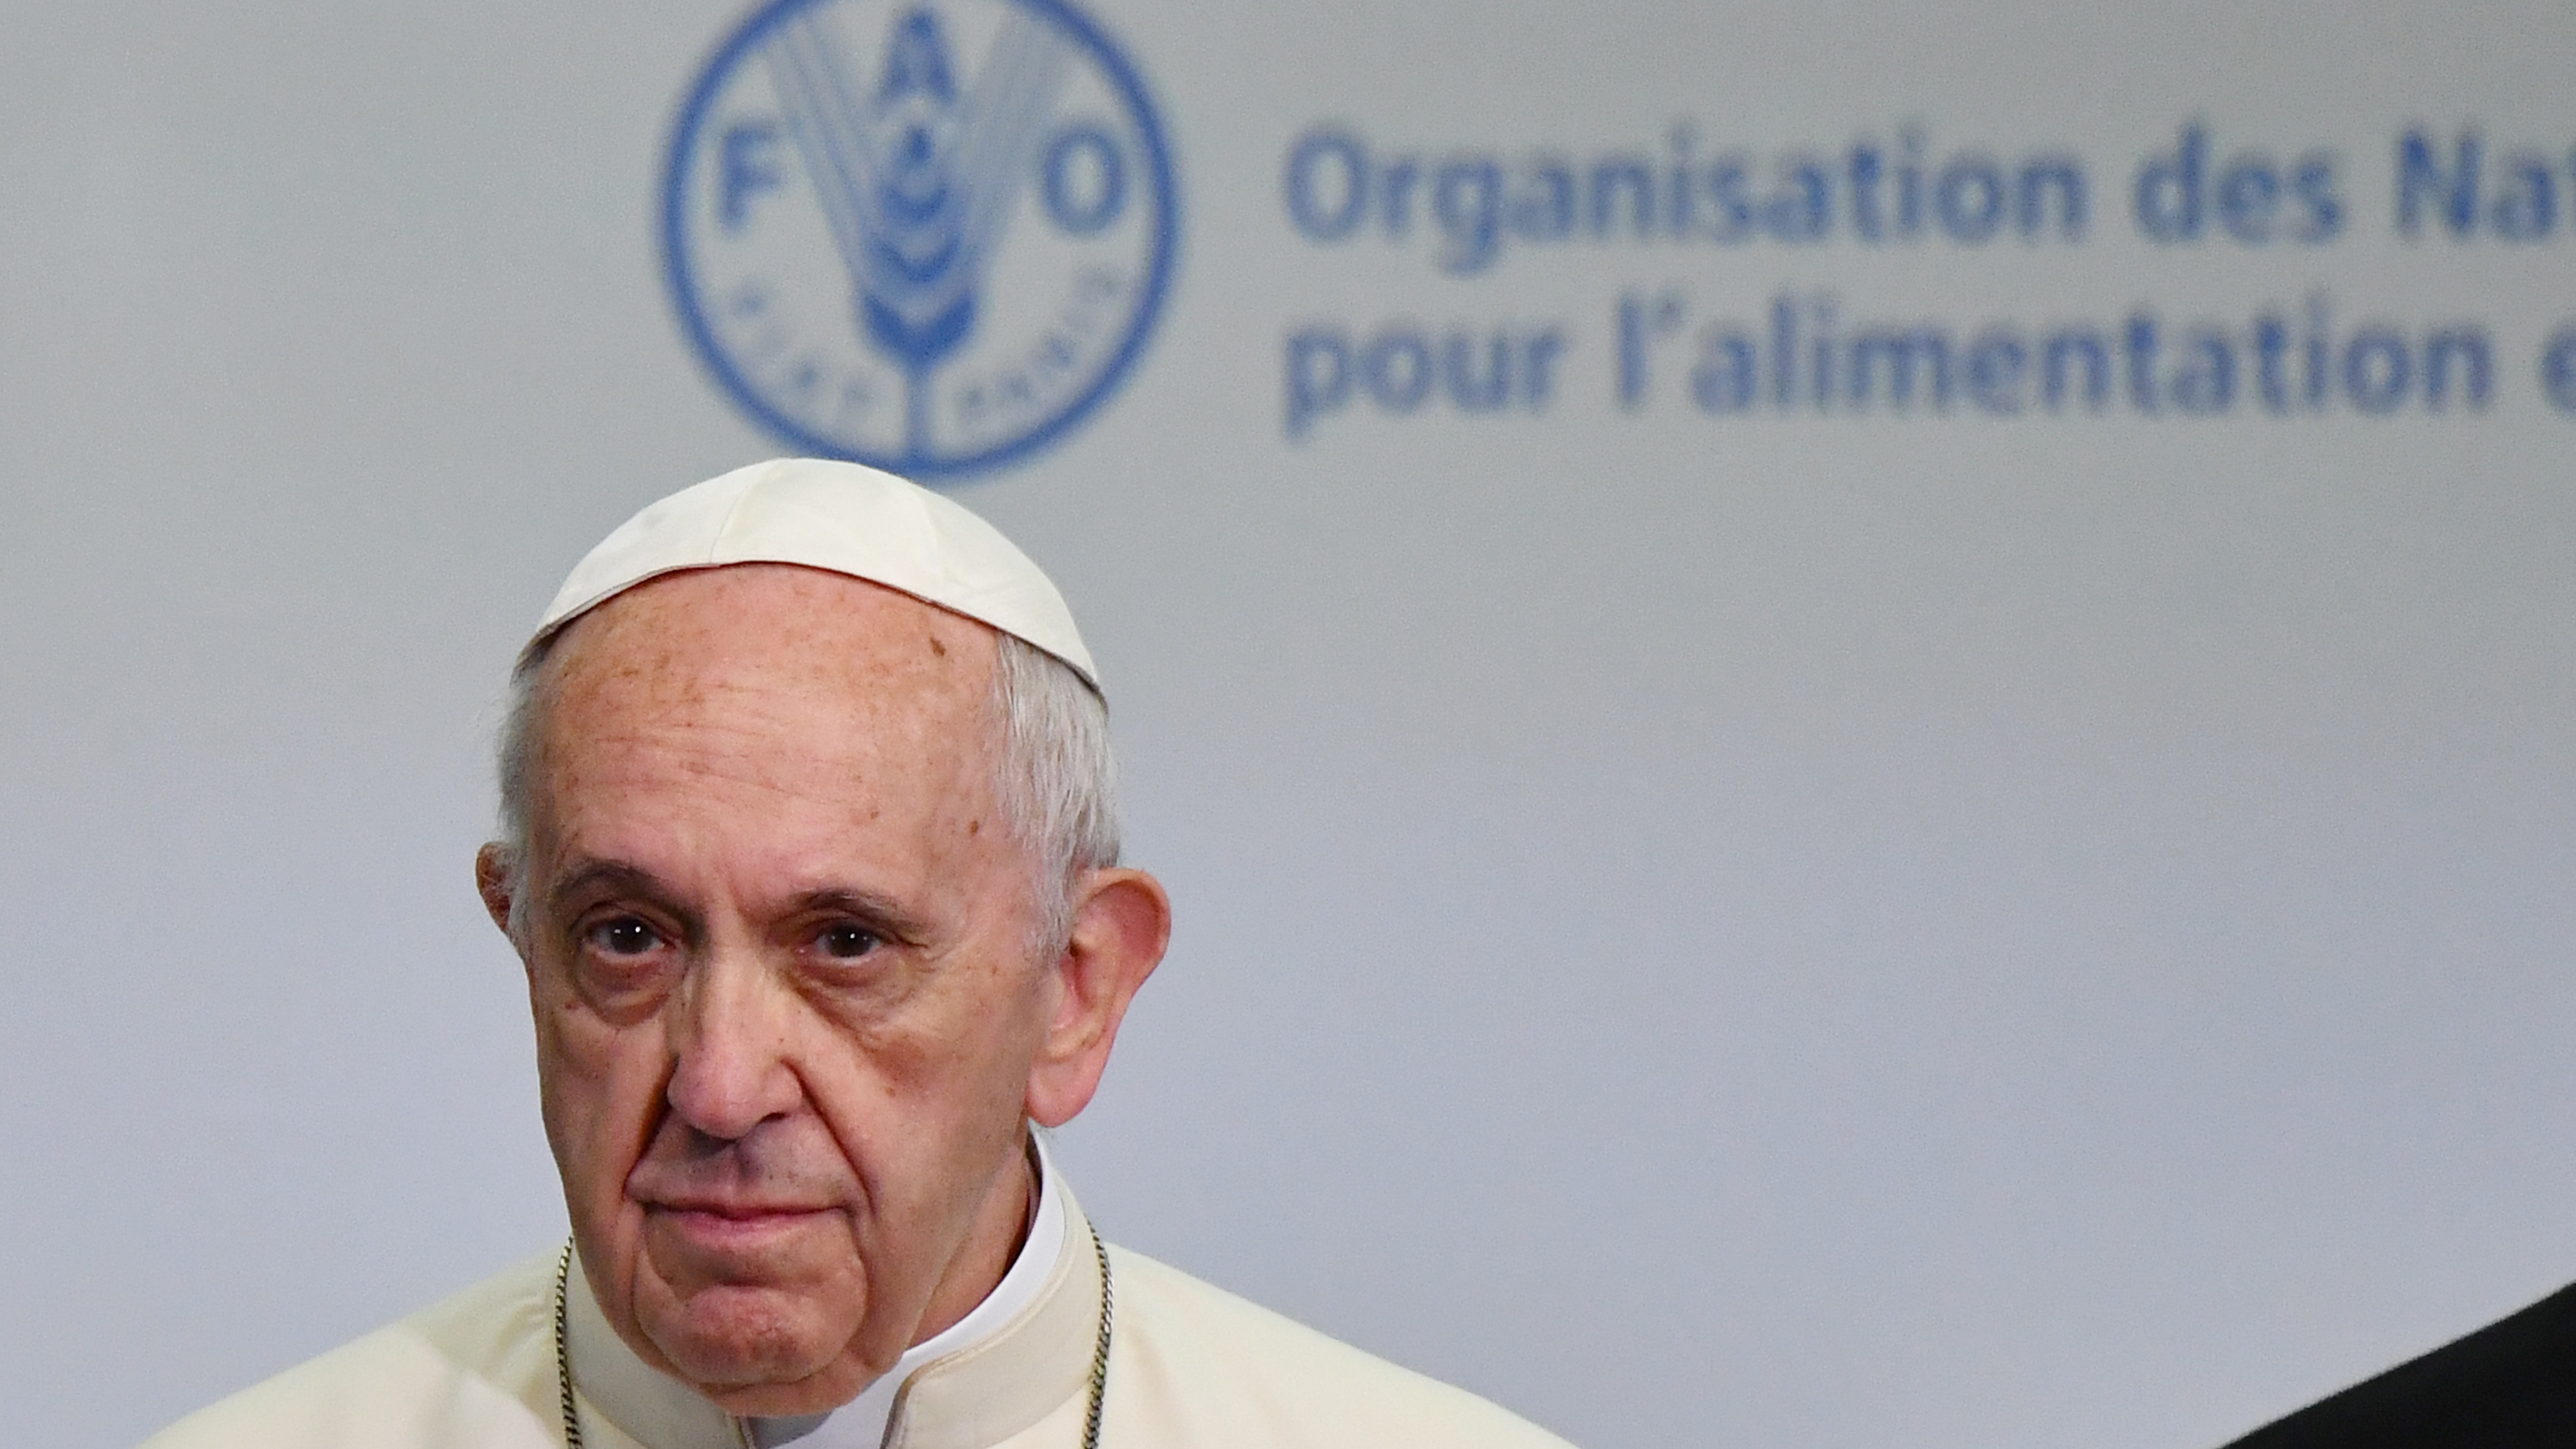  Día Mundial de la Alimentación: «Prestemos oído al grito de marginados y excluidos», dice papa Francisco